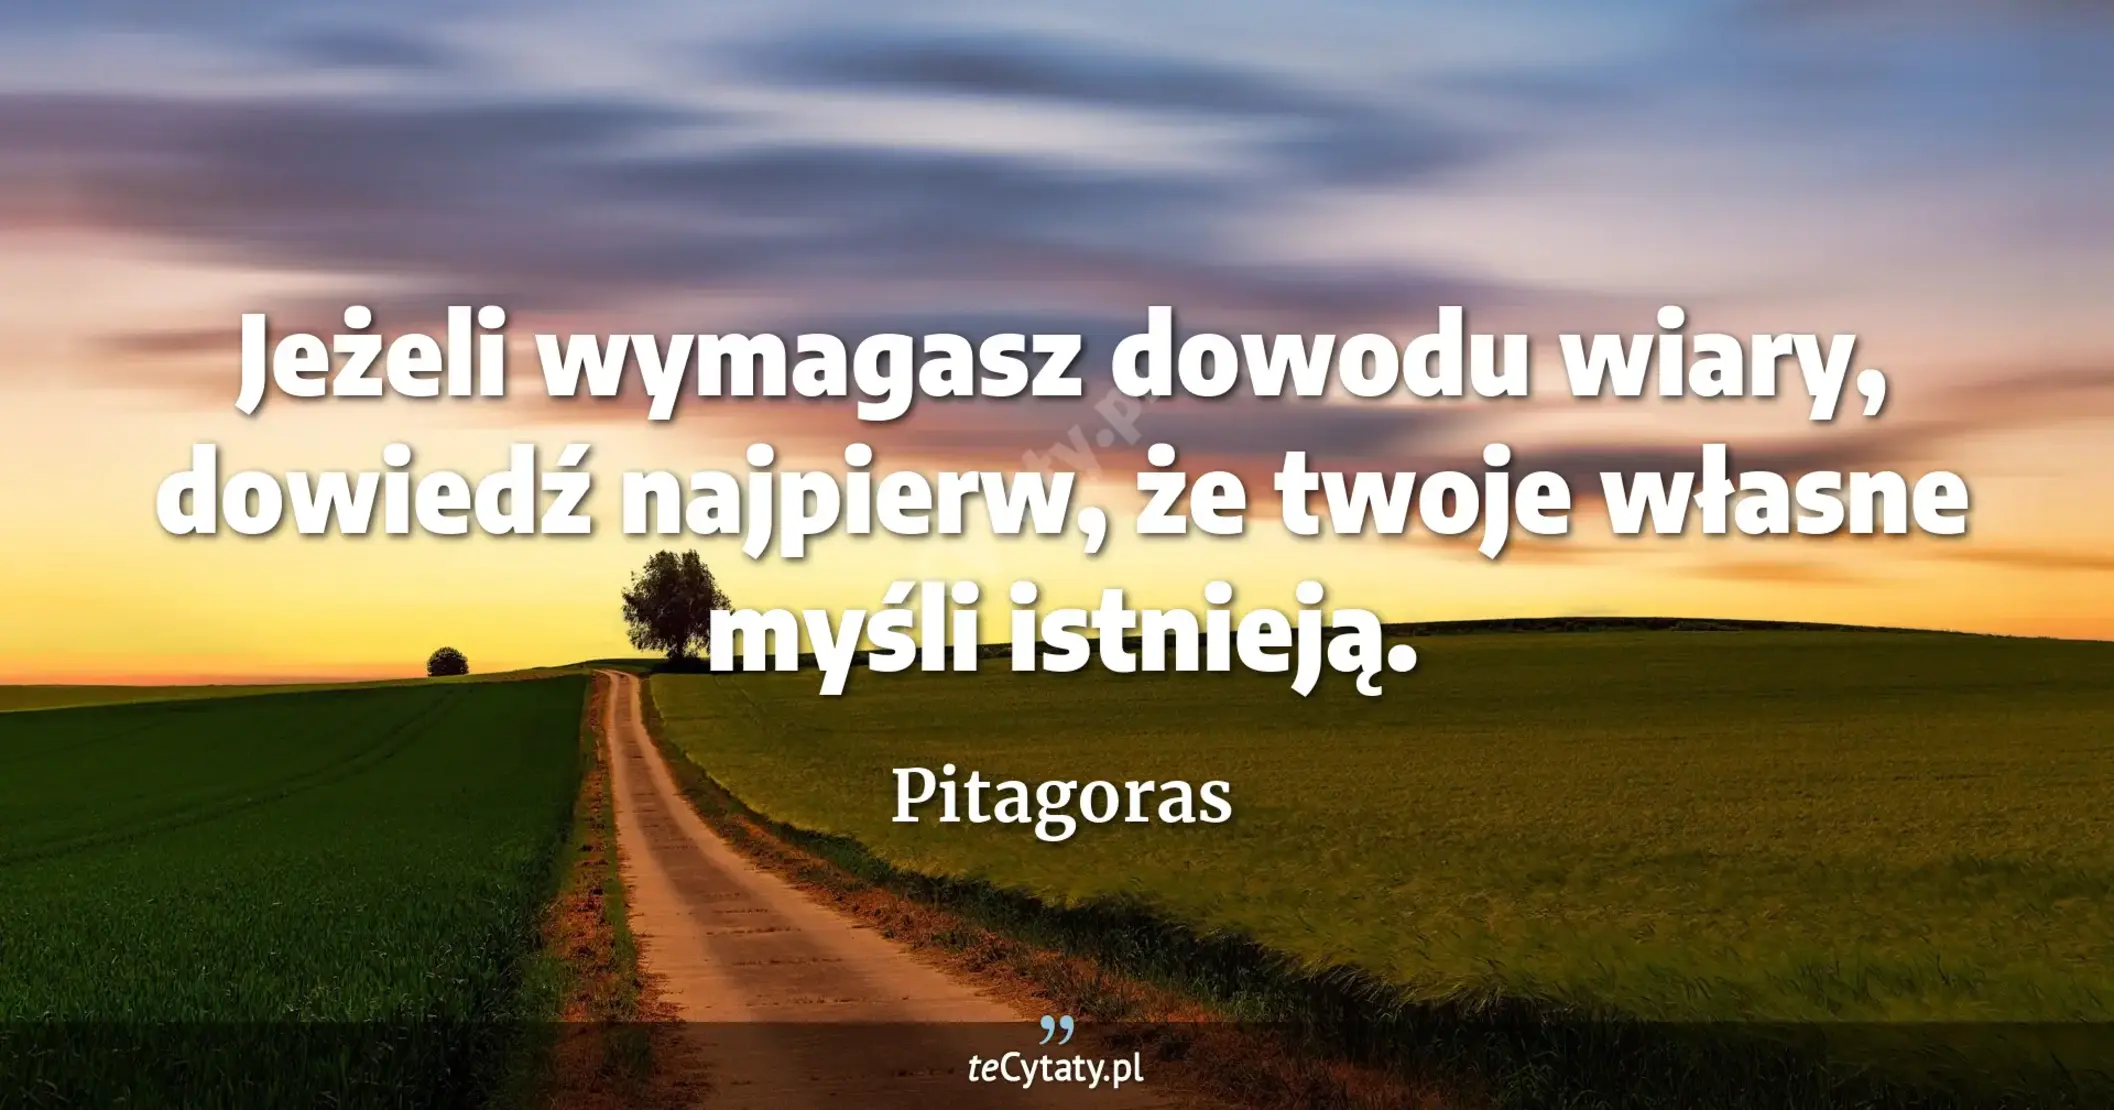 Jeżeli wymagasz dowodu wiary, dowiedź najpierw, że twoje własne myśli istnieją. - Pitagoras